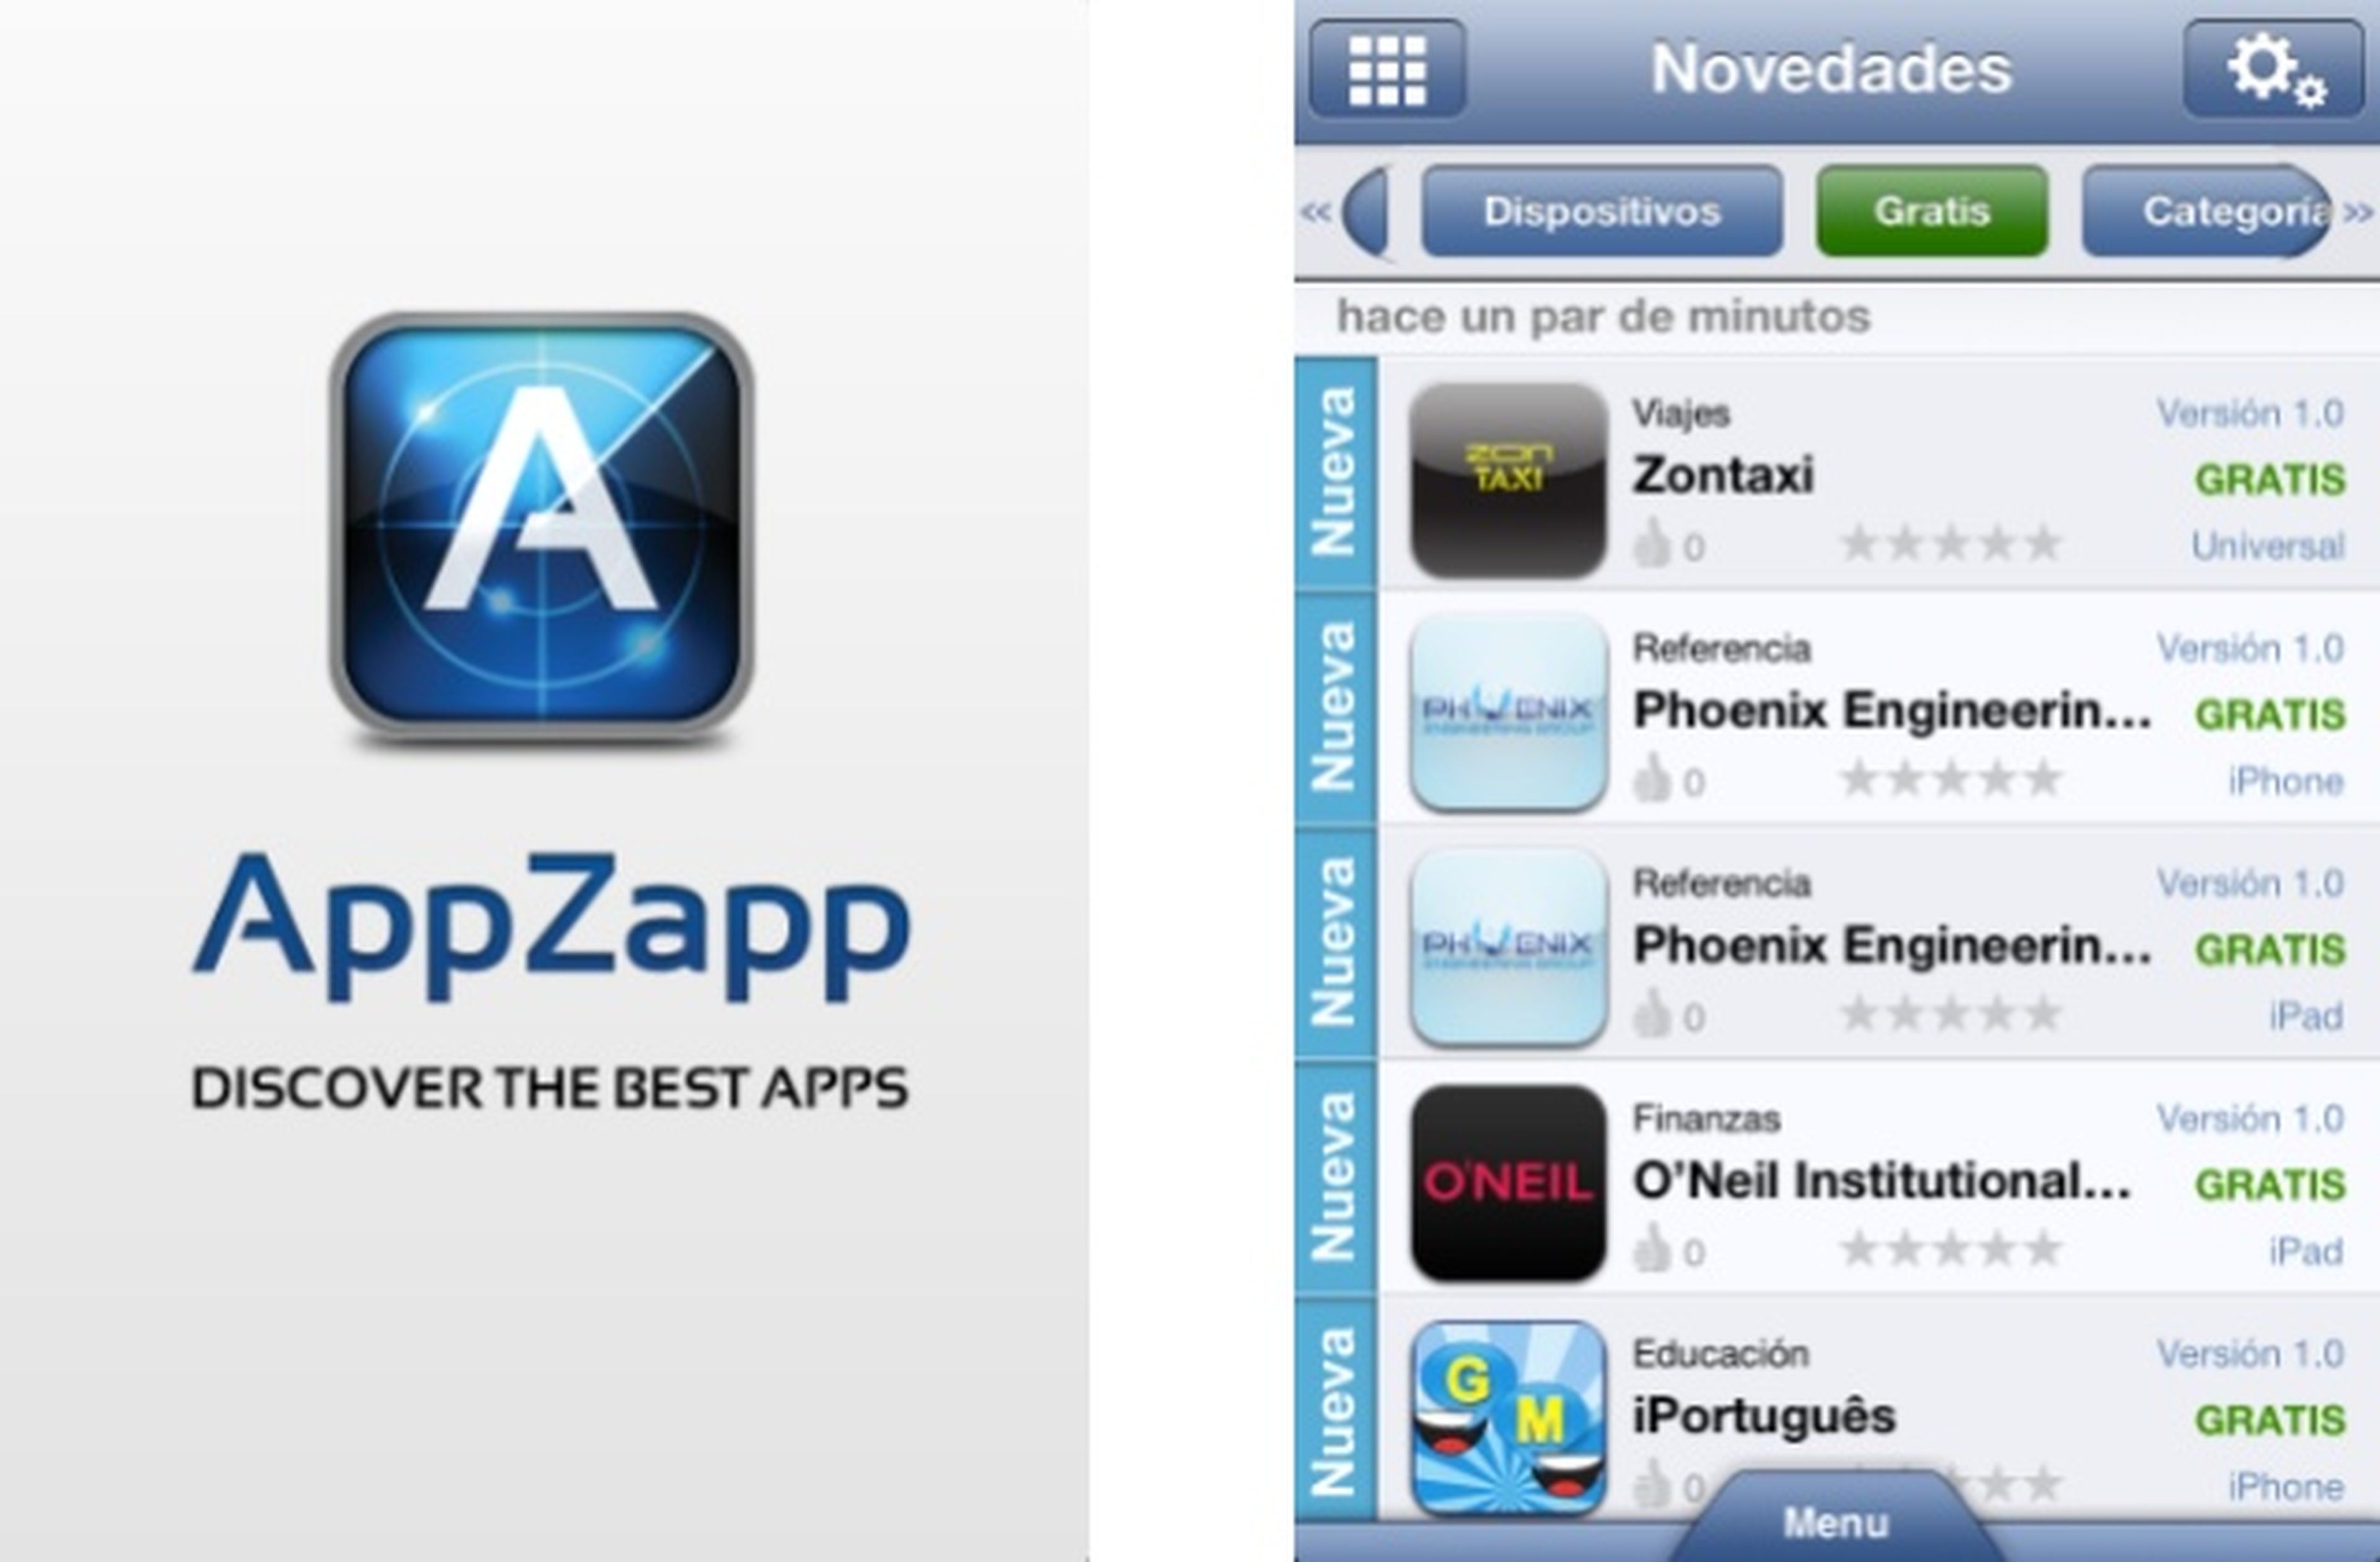 AppZapp